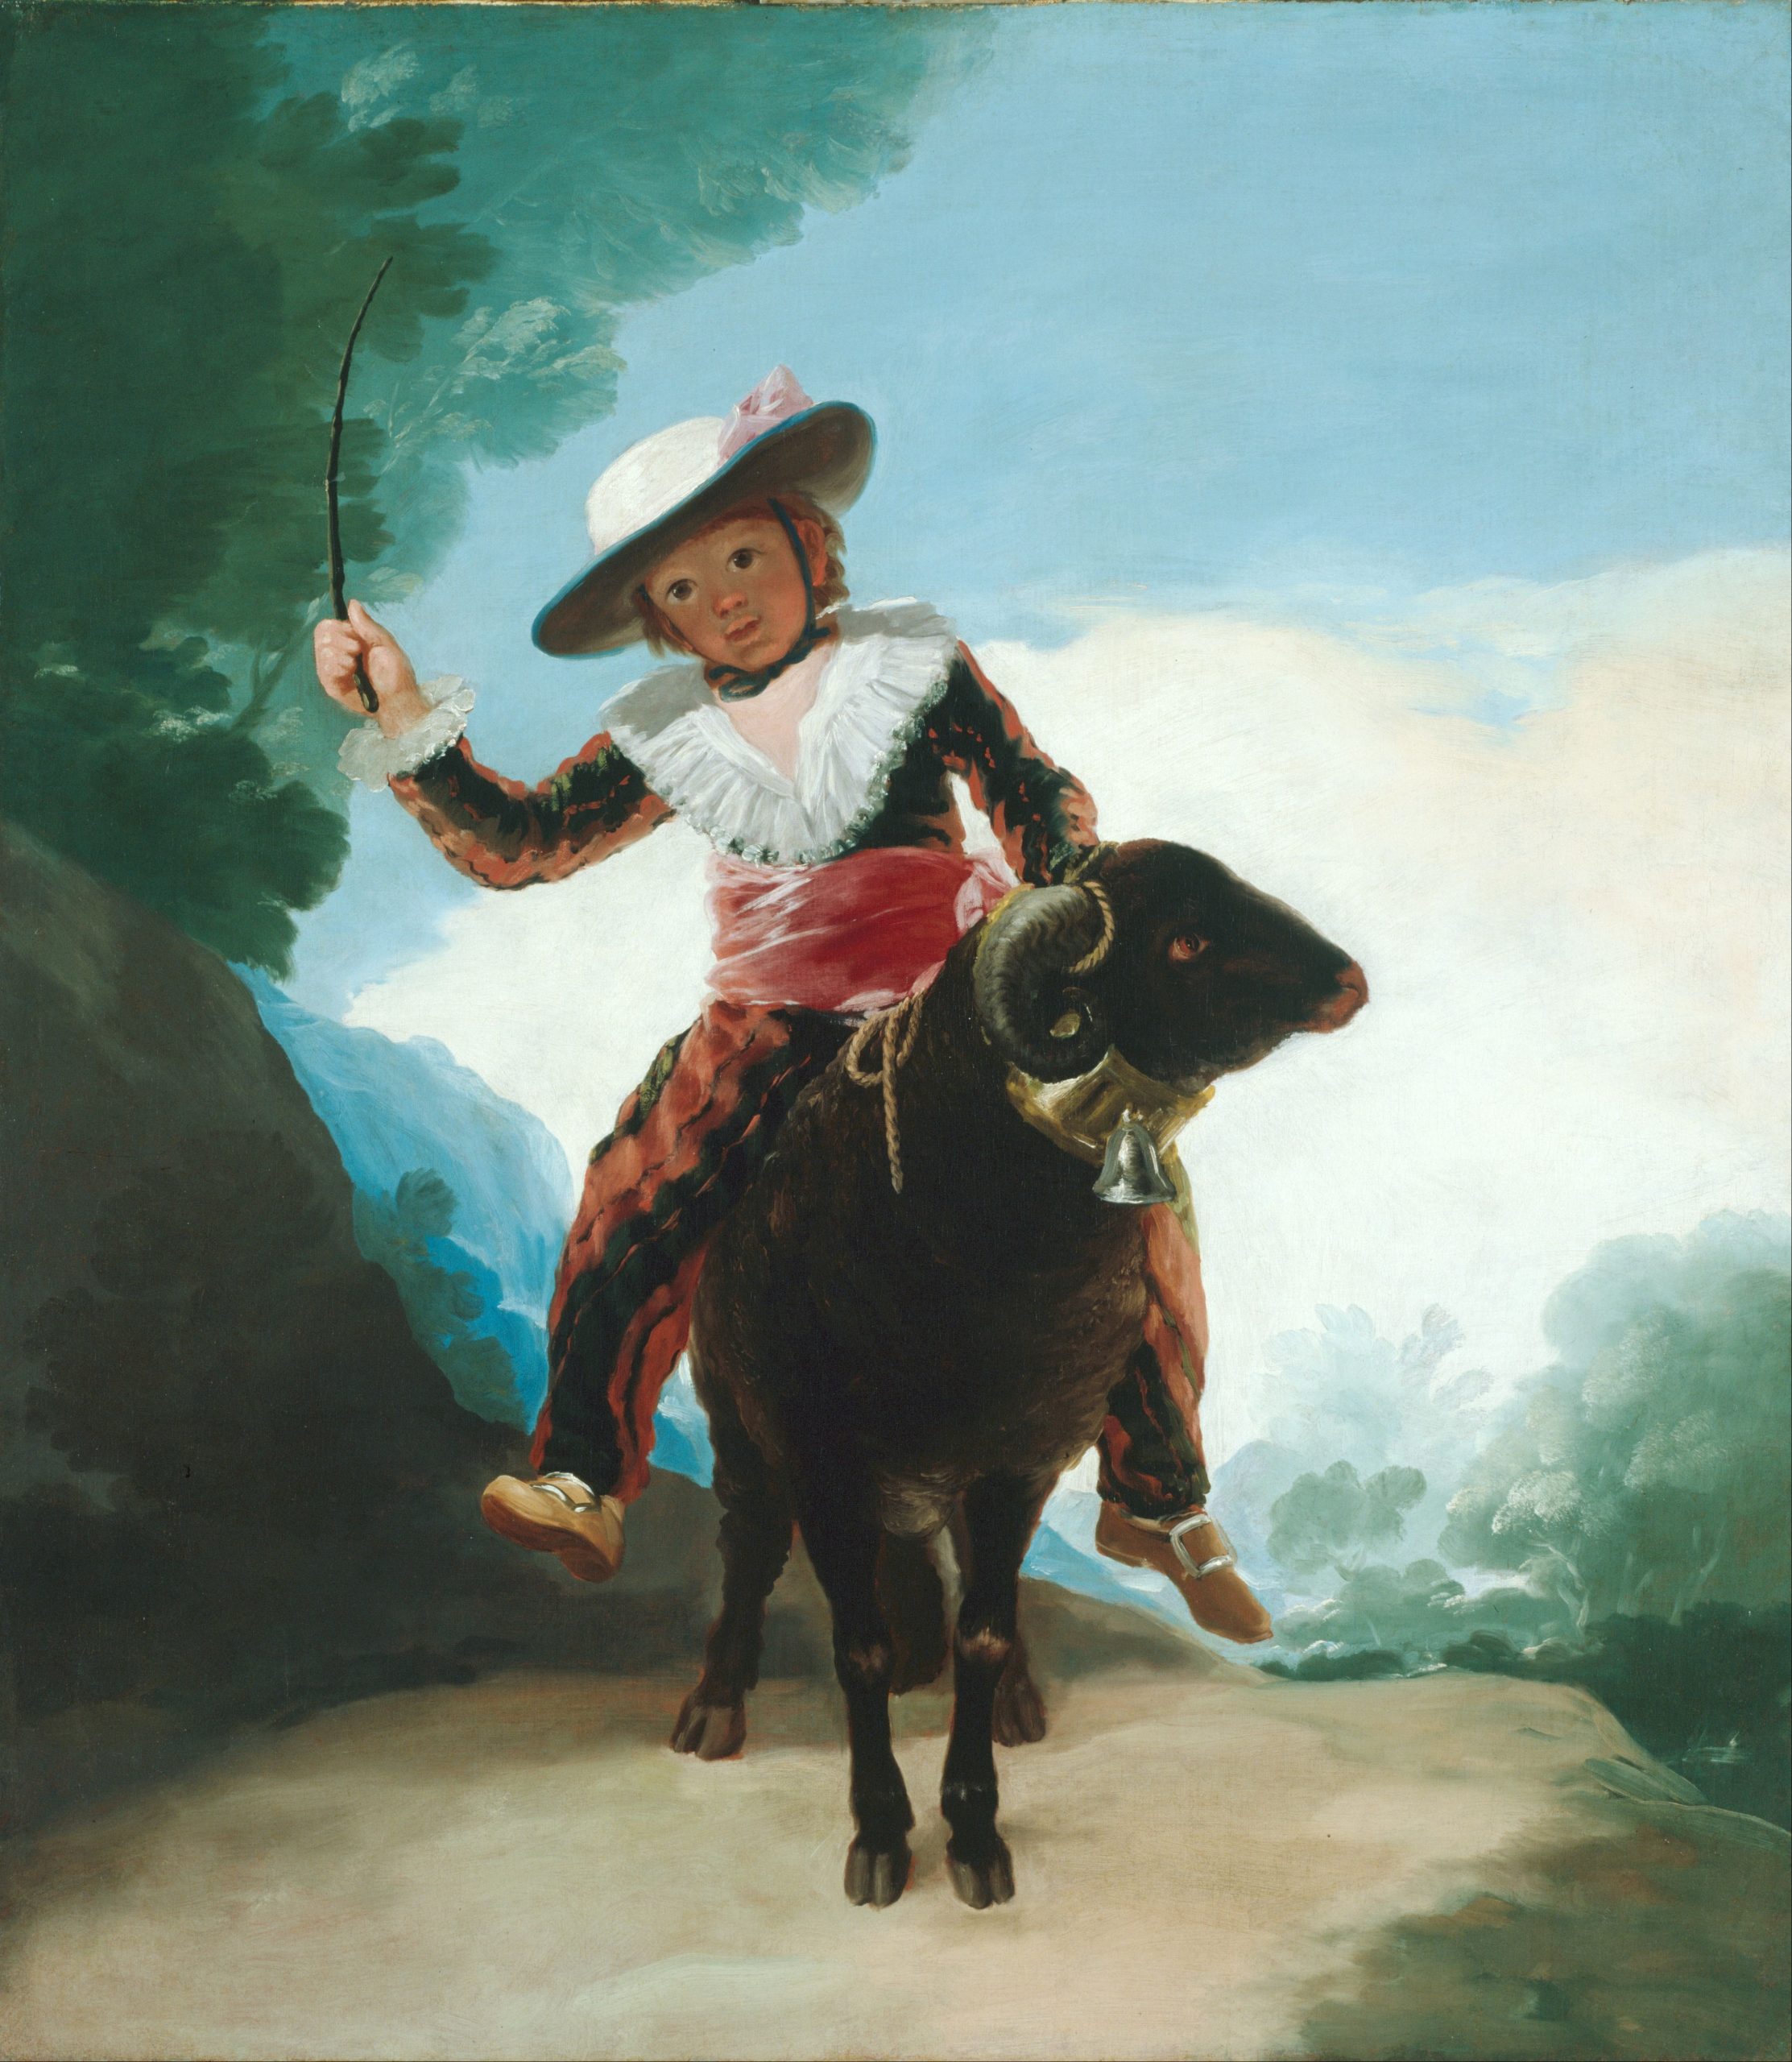 Un tableau de Francisco José de Goya y Lucientes, et des questions